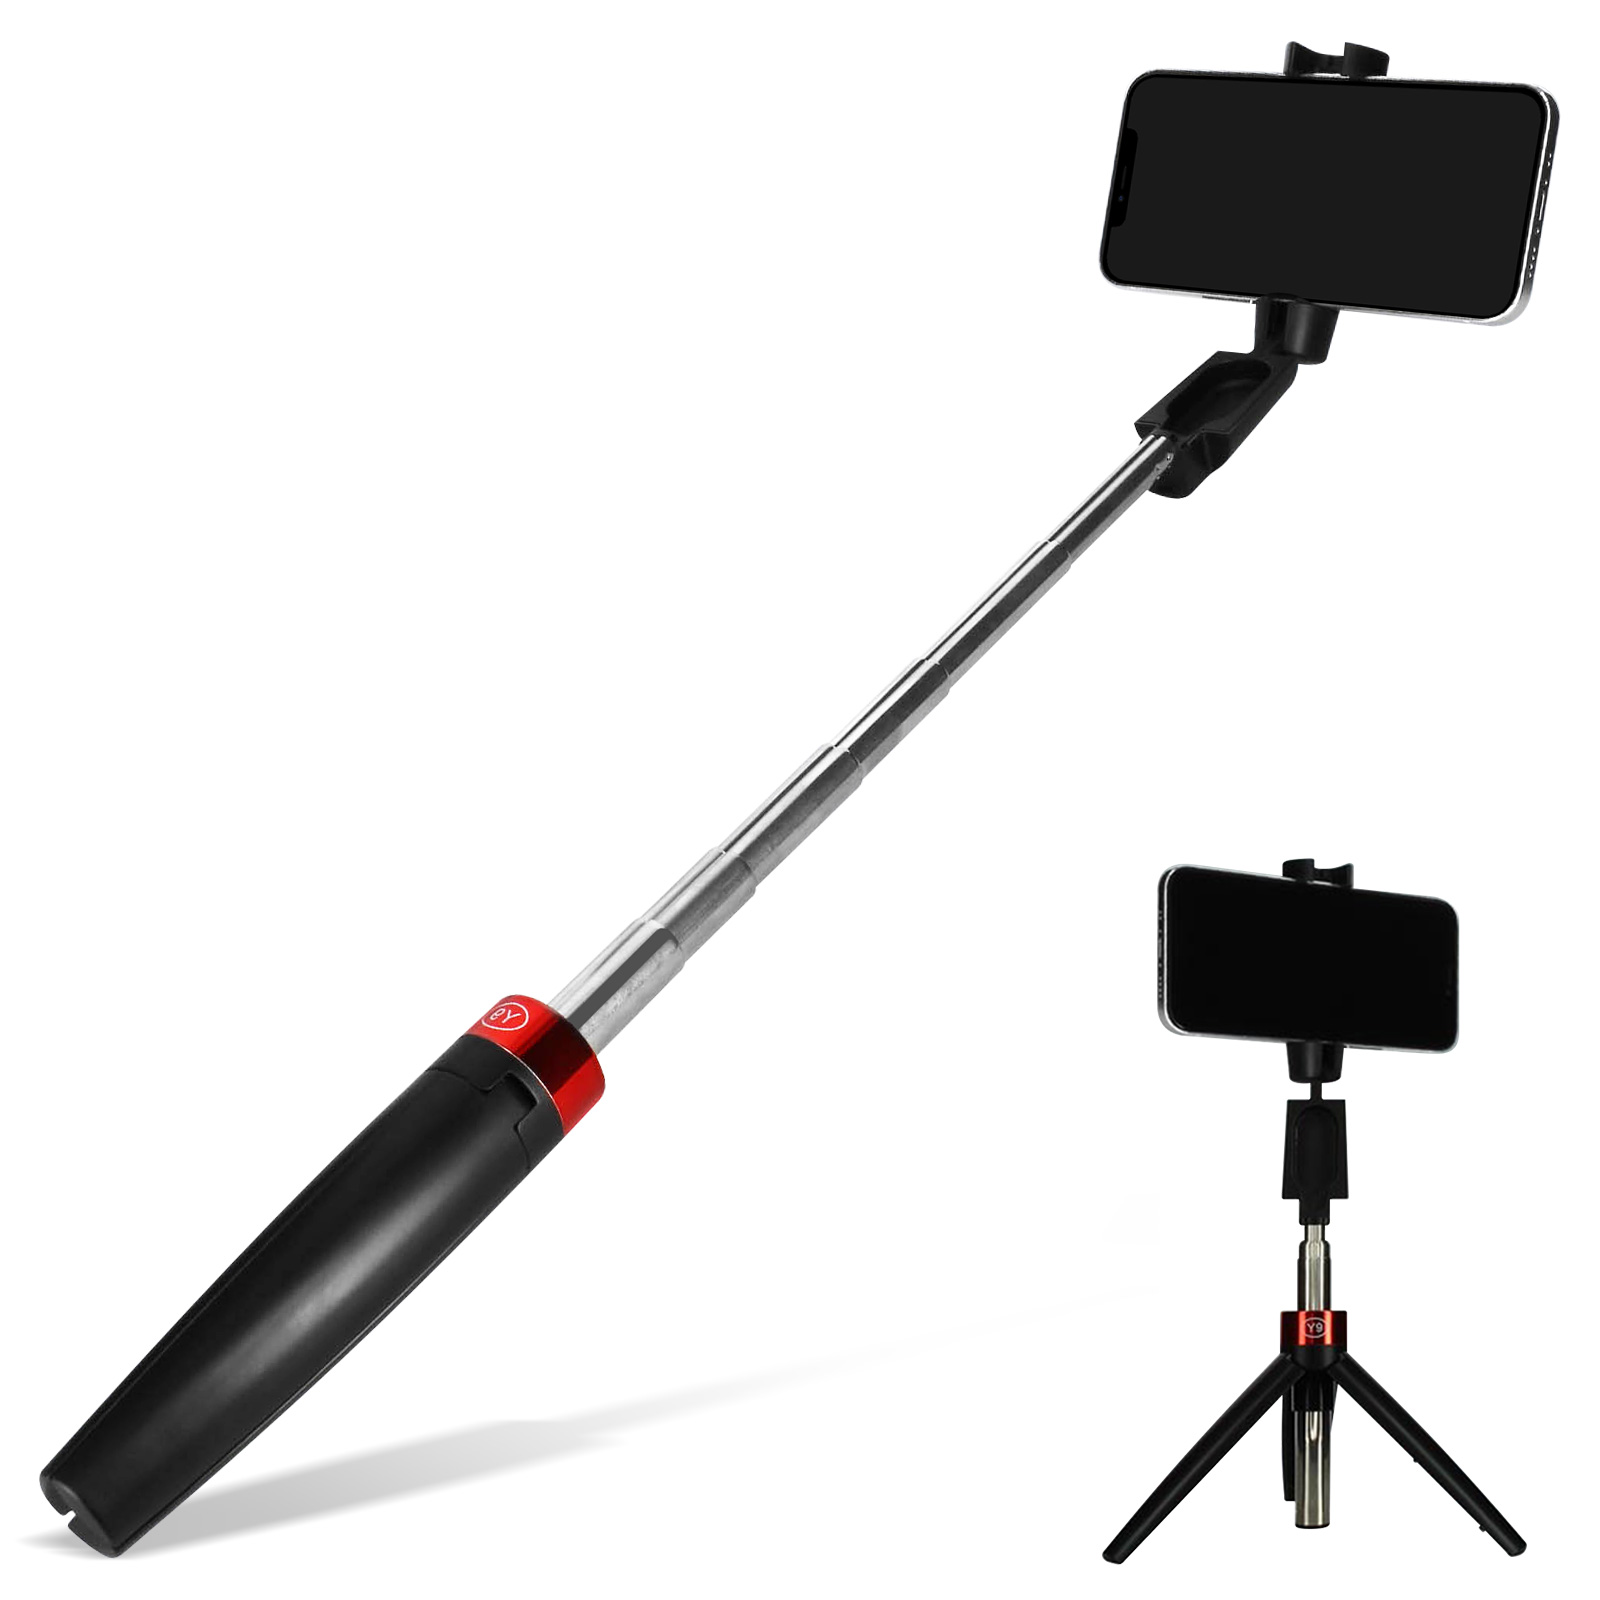 Perche pour selfie avec câble caméra et smartphone - Totalcadeau